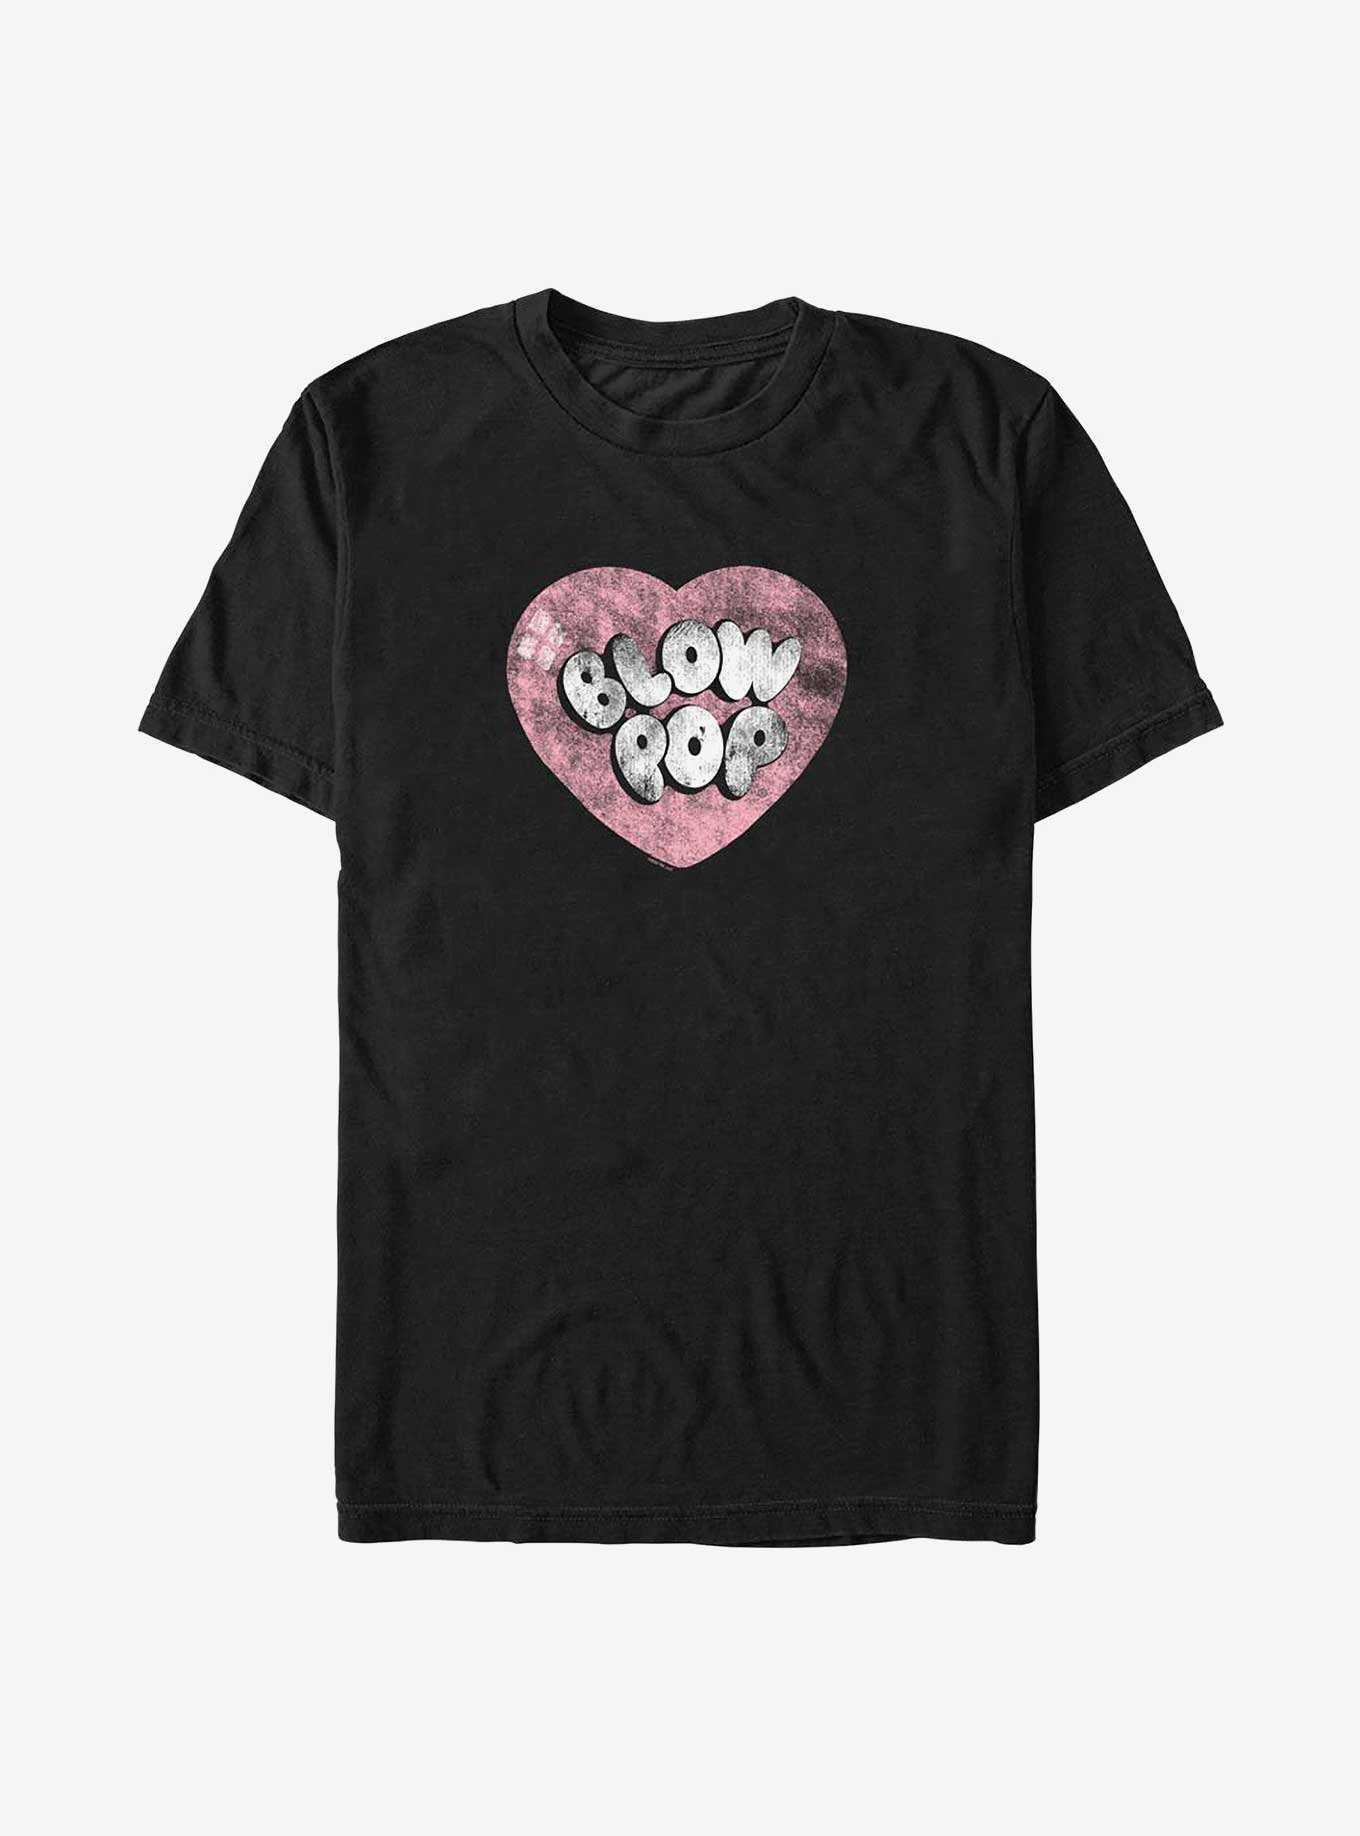 Tootsie Roll Blow Pop Heart T-Shirt, , hi-res